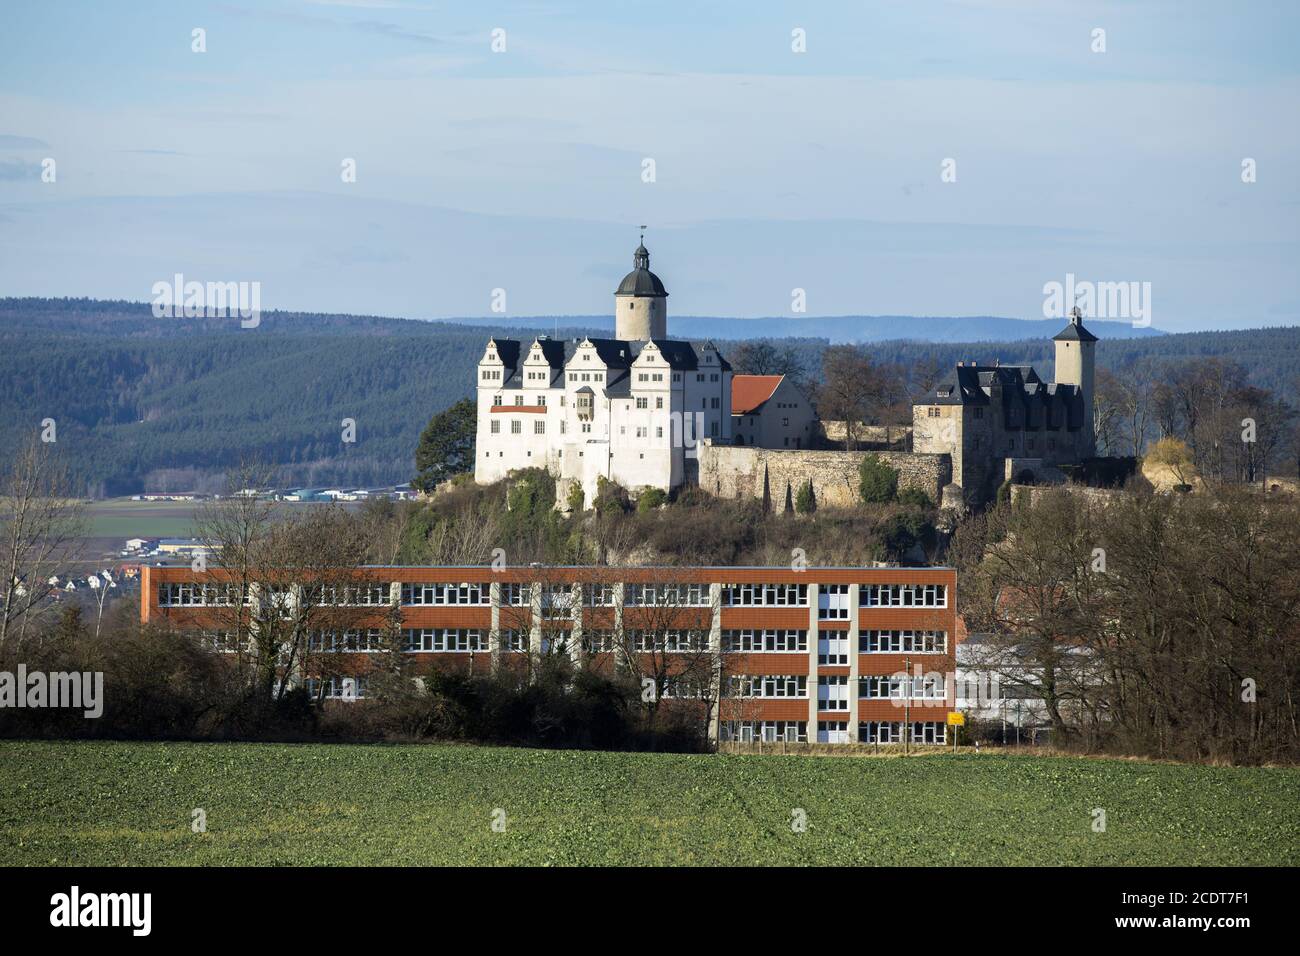 Château de Ranis avec l'école en premier plan, Saale-Orla-Kreis, Thuringe, Allemagne, Europe Banque D'Images